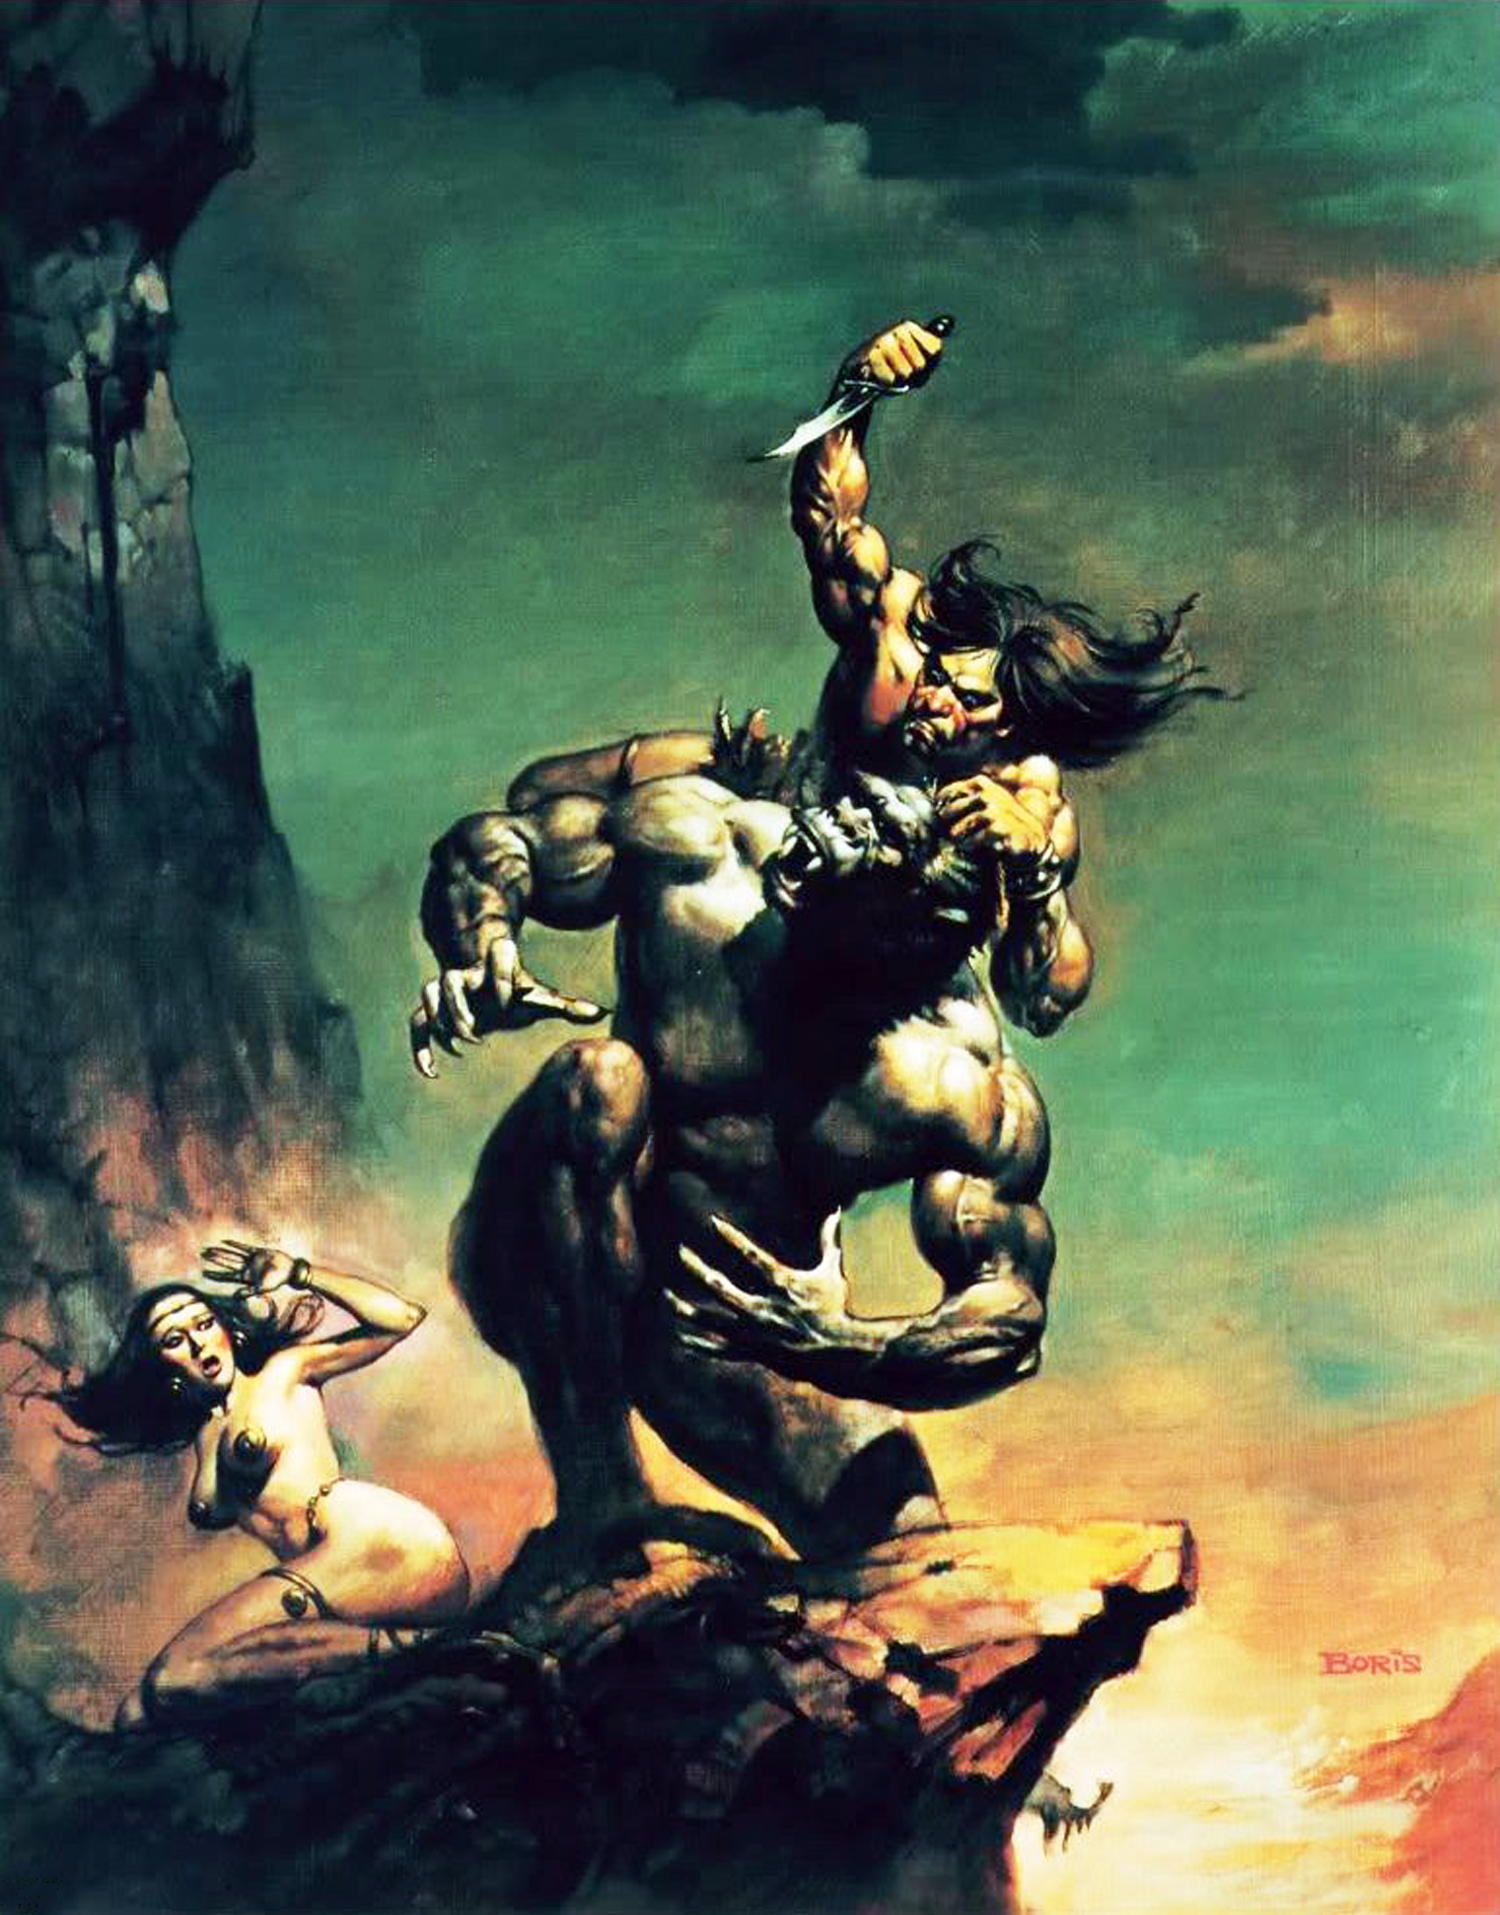 Conan the Barbarian 1982 - IMDb